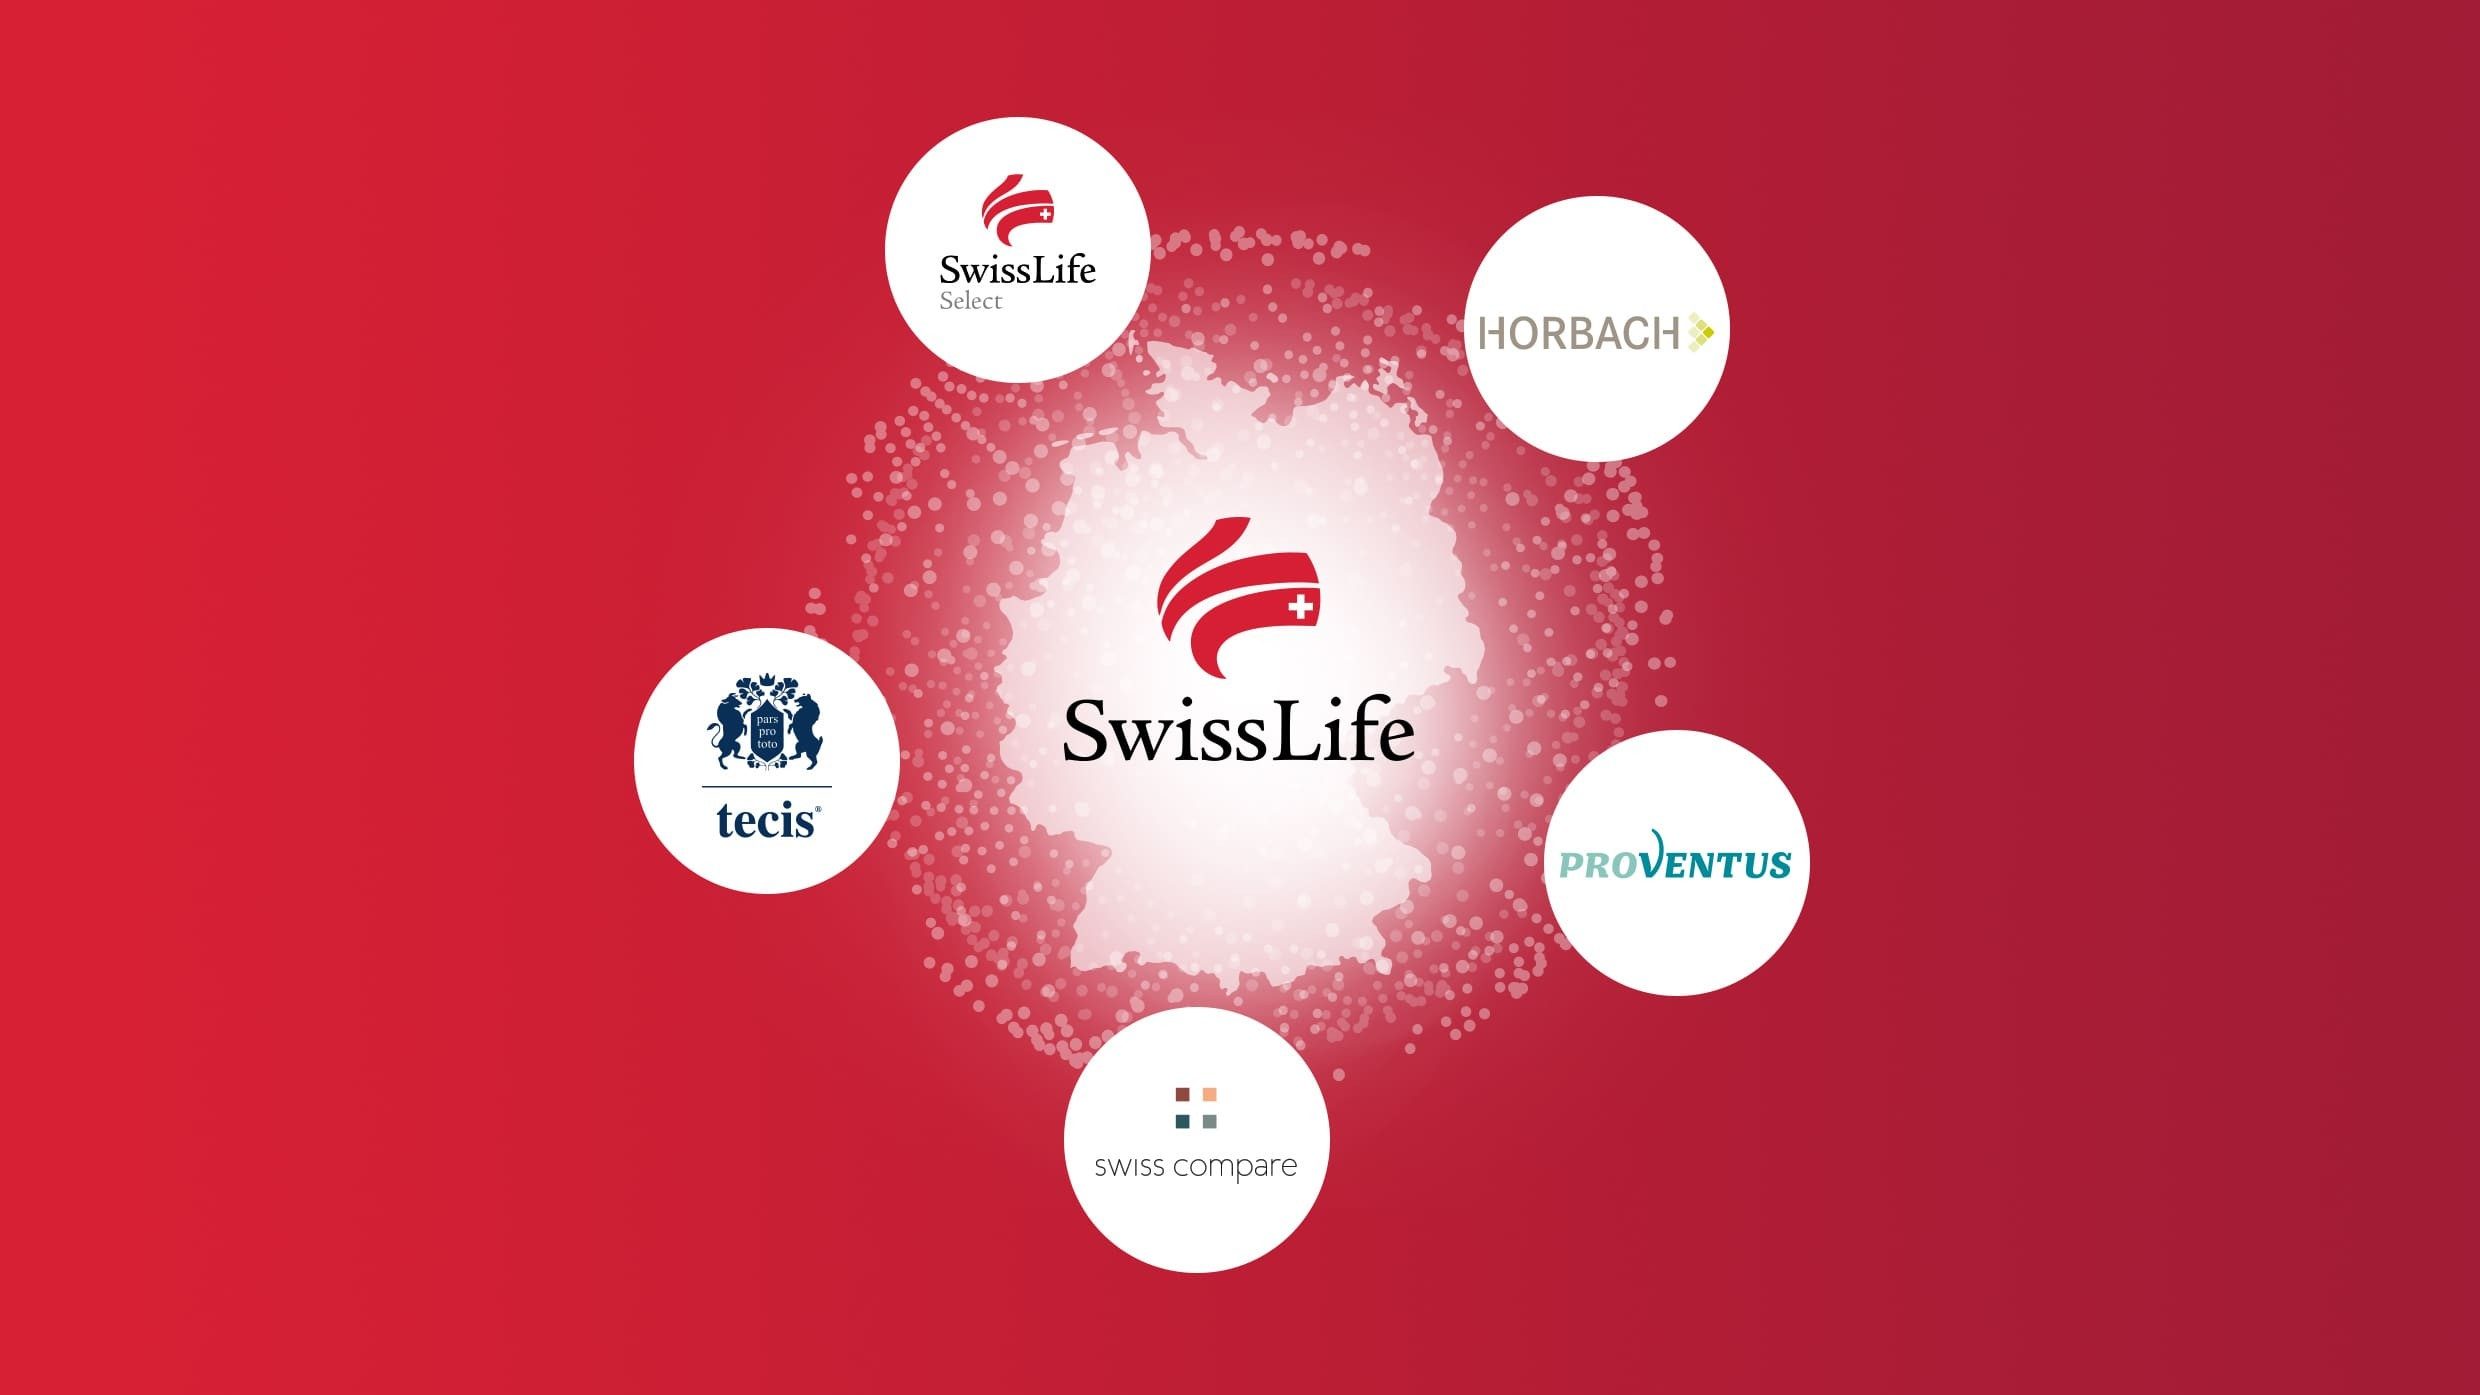 2004 verbindet die Rentenanstalt die Tradition eines Lebensversicherers mit neuen Zielen: Aus ihr wird Swiss Life – mit neuem und einheitlichem Erscheinungsbild. Die drei Linien im Logo stellen die prägnantesten Handlinien der rechten Hand dar. Sie stehen für den Kunden, der bei uns im Mittelpunkt steht – und für seinen ganz individuellen Bedarf bei der finanziellen Absicherung. Das Schweizer Kreuz repräsentiert die eidgenössischen Wurzeln.  2008 kauft Swiss Life eine Gruppe von Finanzvertrieben, die heute unter den Marken Swiss Life Select, tecis, HORBACH und Proventus für individuelle Beratung stehen. So ist Swiss Life seither ein Anbieter von umfassenden Finanz- und Vorsorgelösungen.